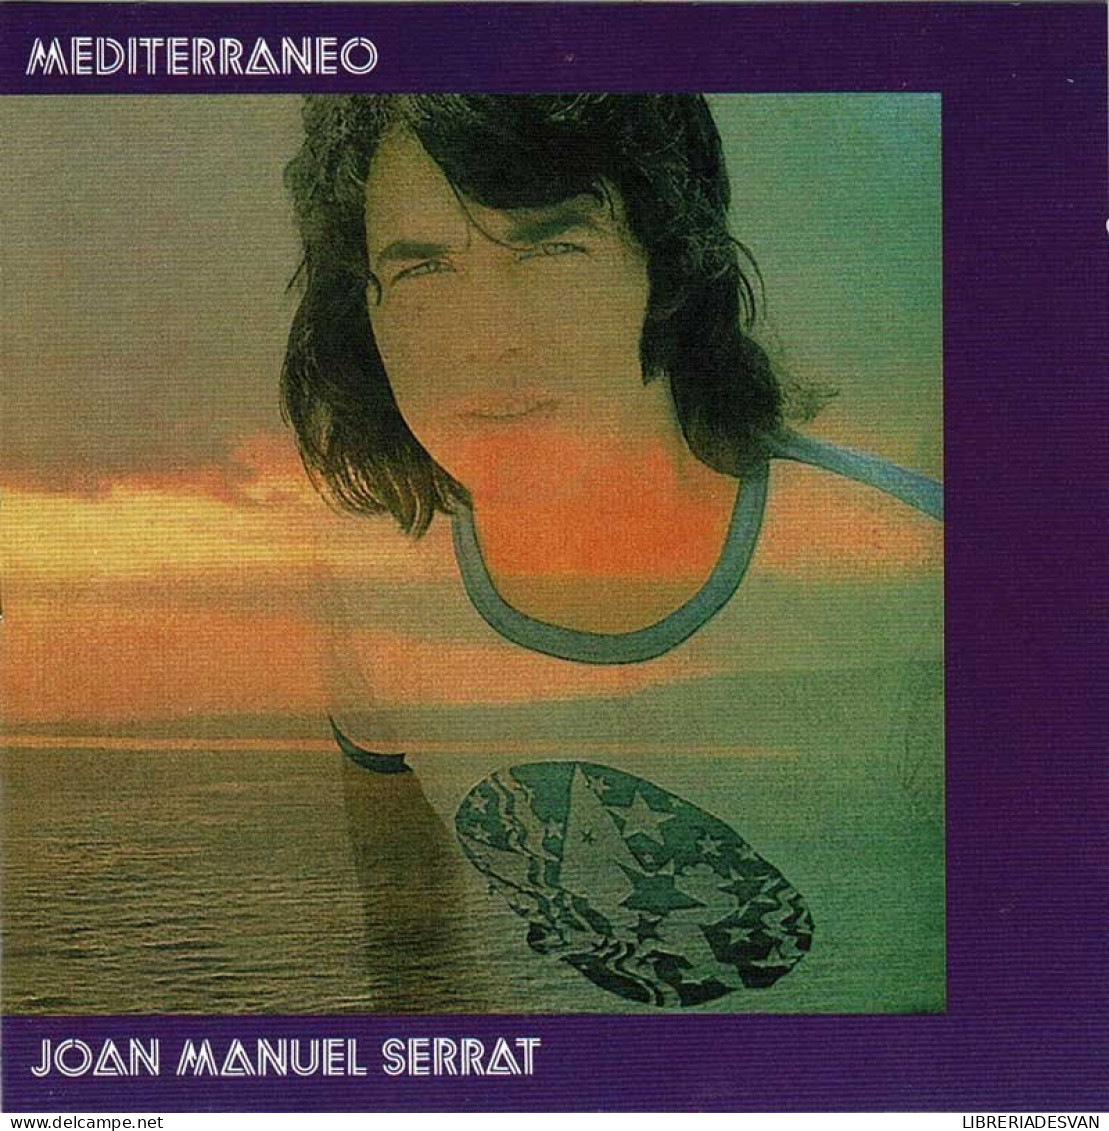 Joan Manuel Serrat - Mediterráneo. CD - Disco, Pop